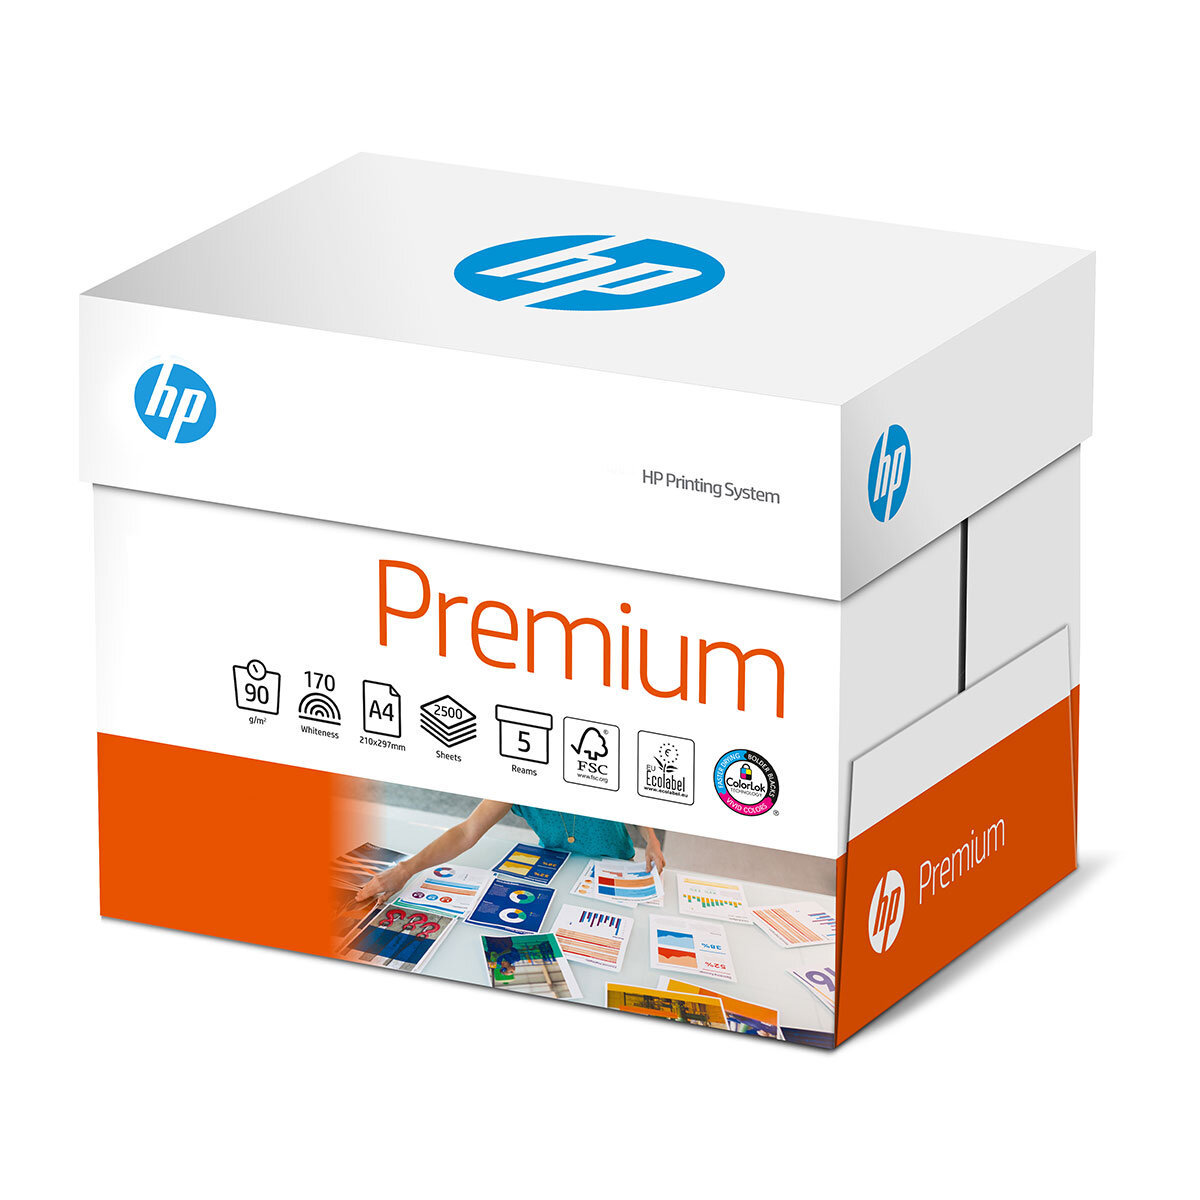 HP Premium Paper 5 Reams A4 90GSM 2500 Sheets 1 Box